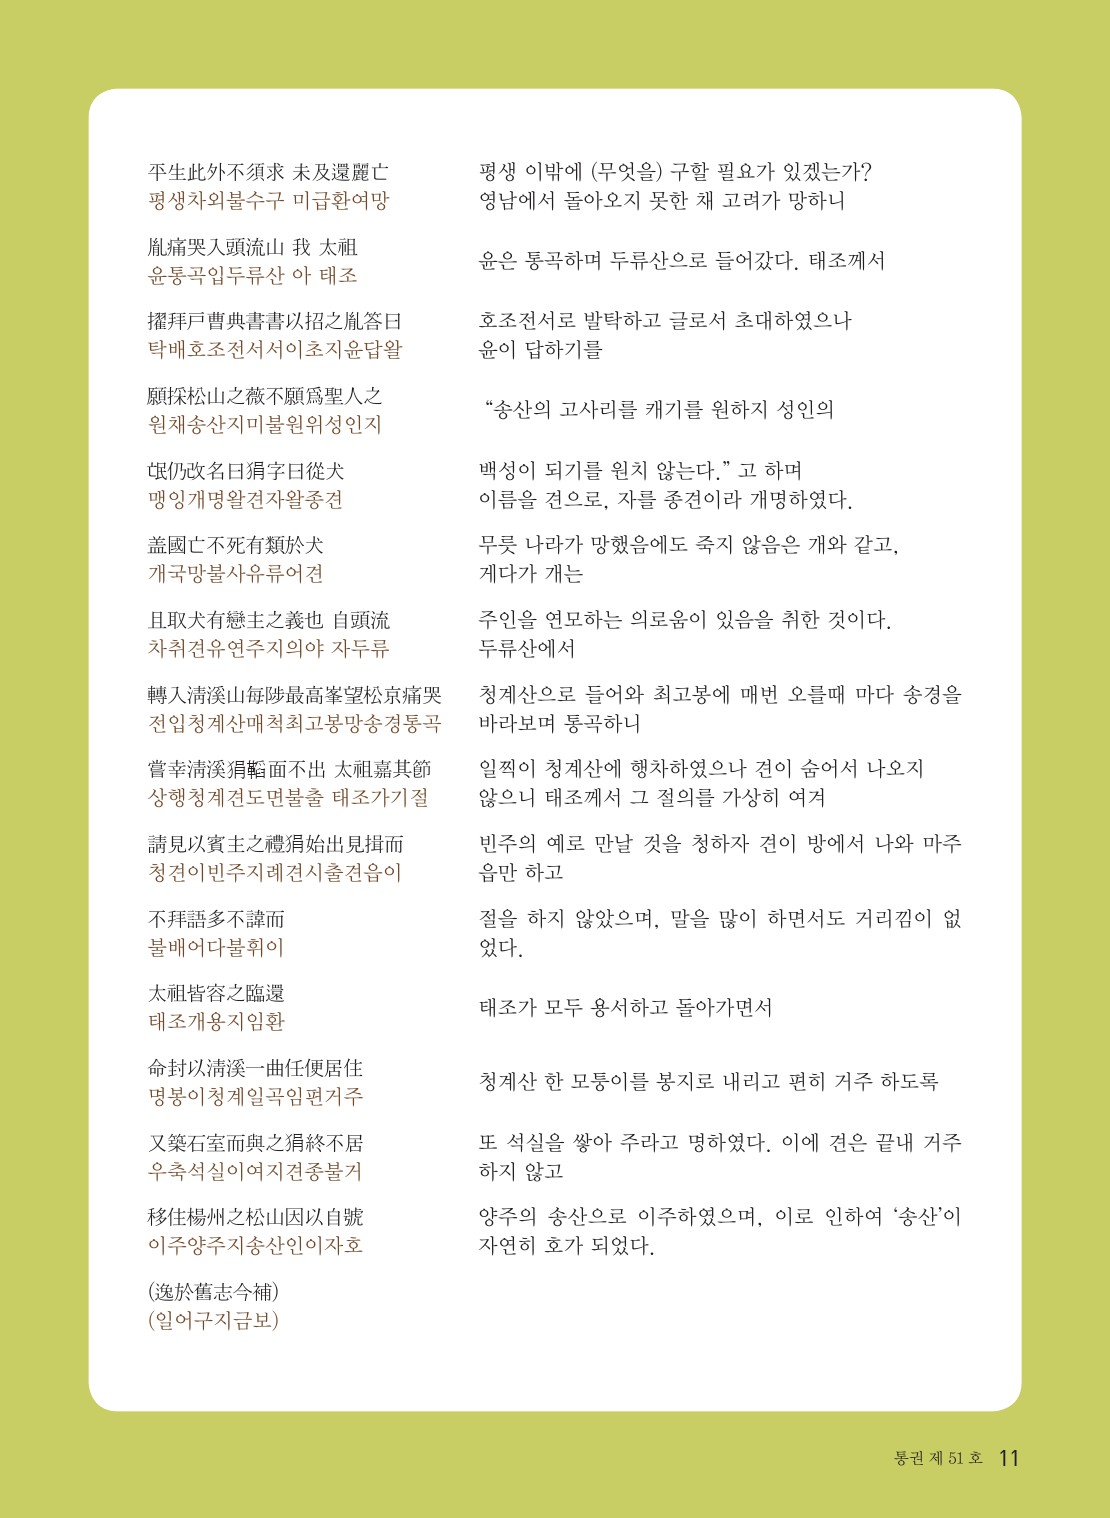 201013 평양조씨종보(51호)-수정-5-11.jpg